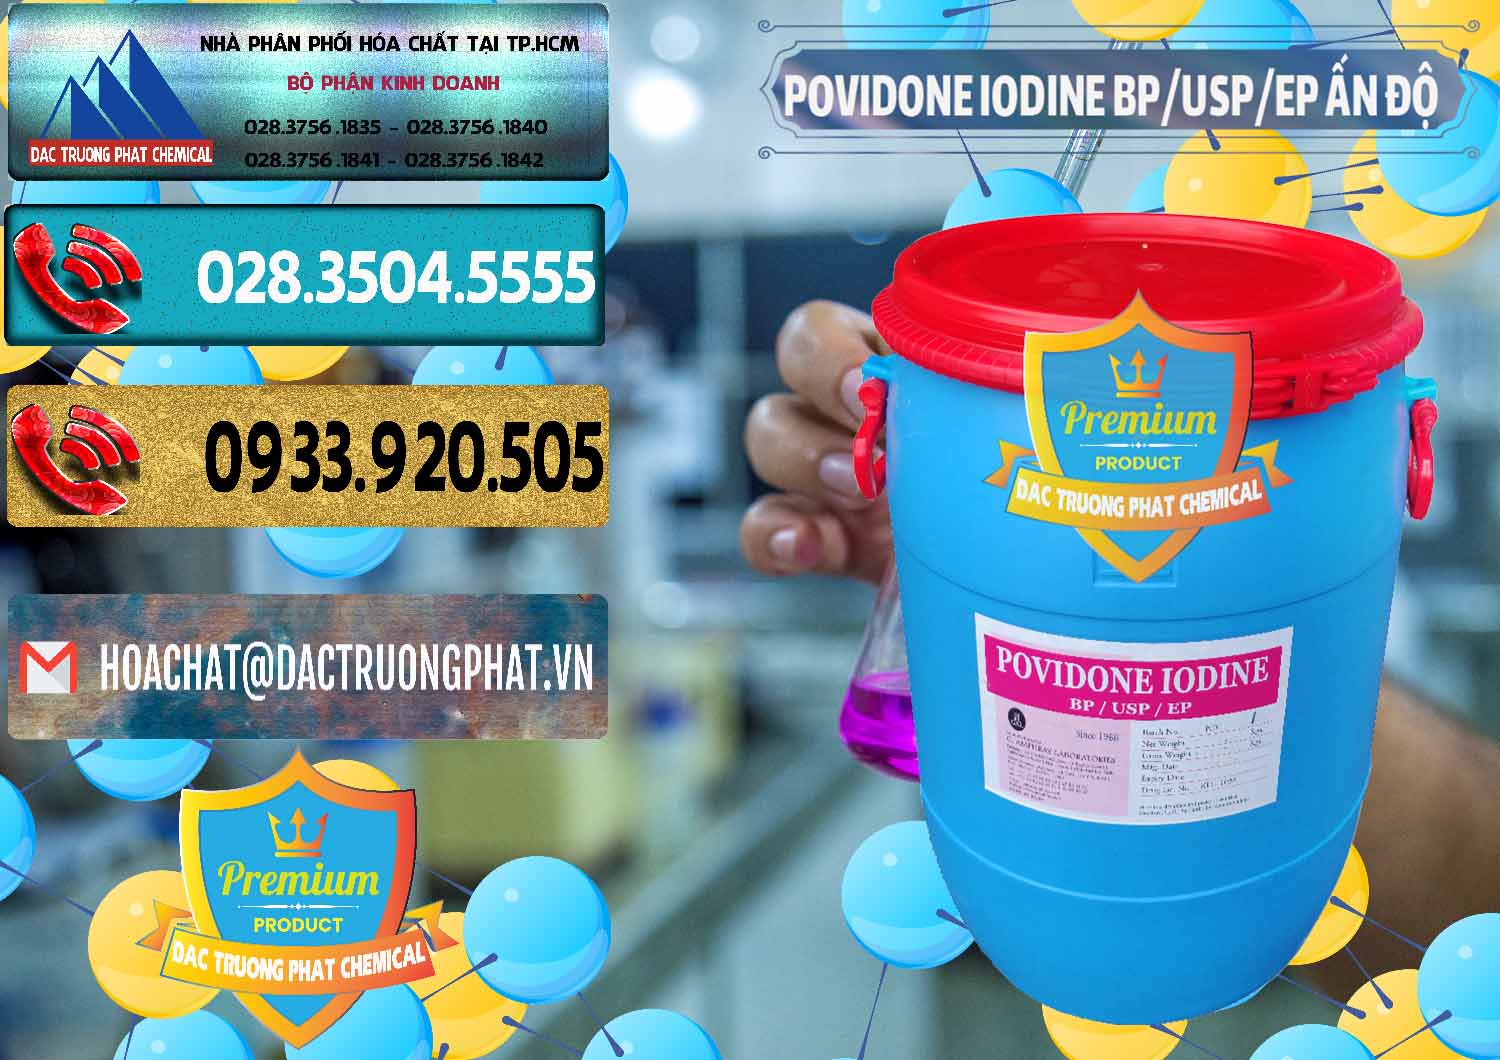 Cty bán ( cung cấp ) Povidone Iodine BP USP EP Ấn Độ India - 0318 - Nhà cung cấp & phân phối hóa chất tại TP.HCM - hoachatdetnhuom.com